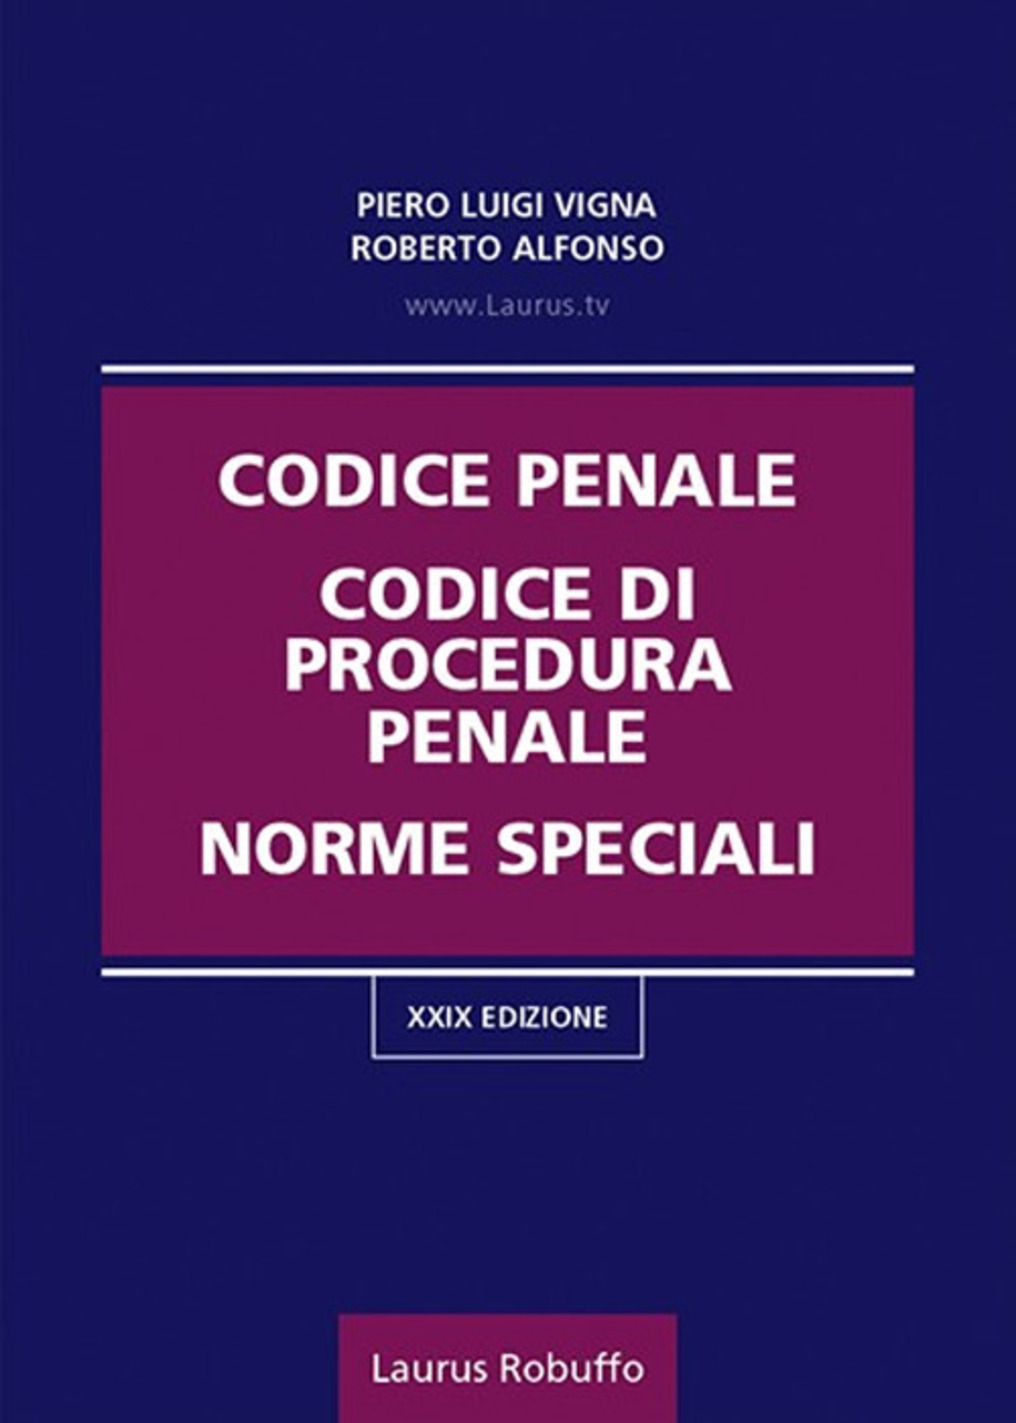 Codice penale, codice di procedura penale, norme speciali.